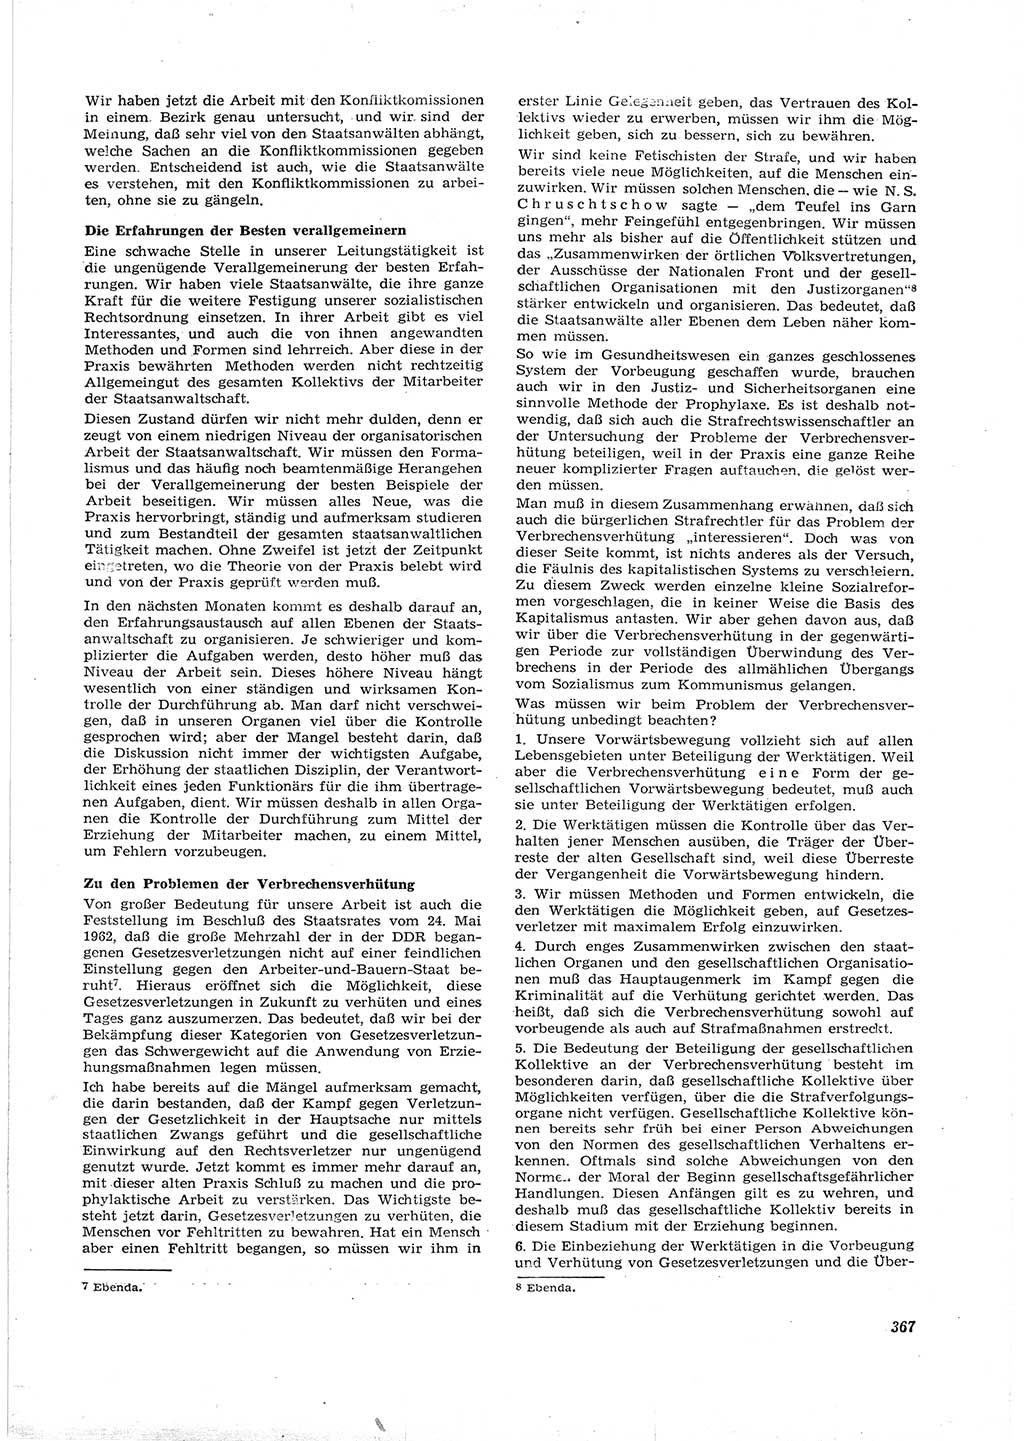 Neue Justiz (NJ), Zeitschrift für Recht und Rechtswissenschaft [Deutsche Demokratische Republik (DDR)], 16. Jahrgang 1962, Seite 367 (NJ DDR 1962, S. 367)